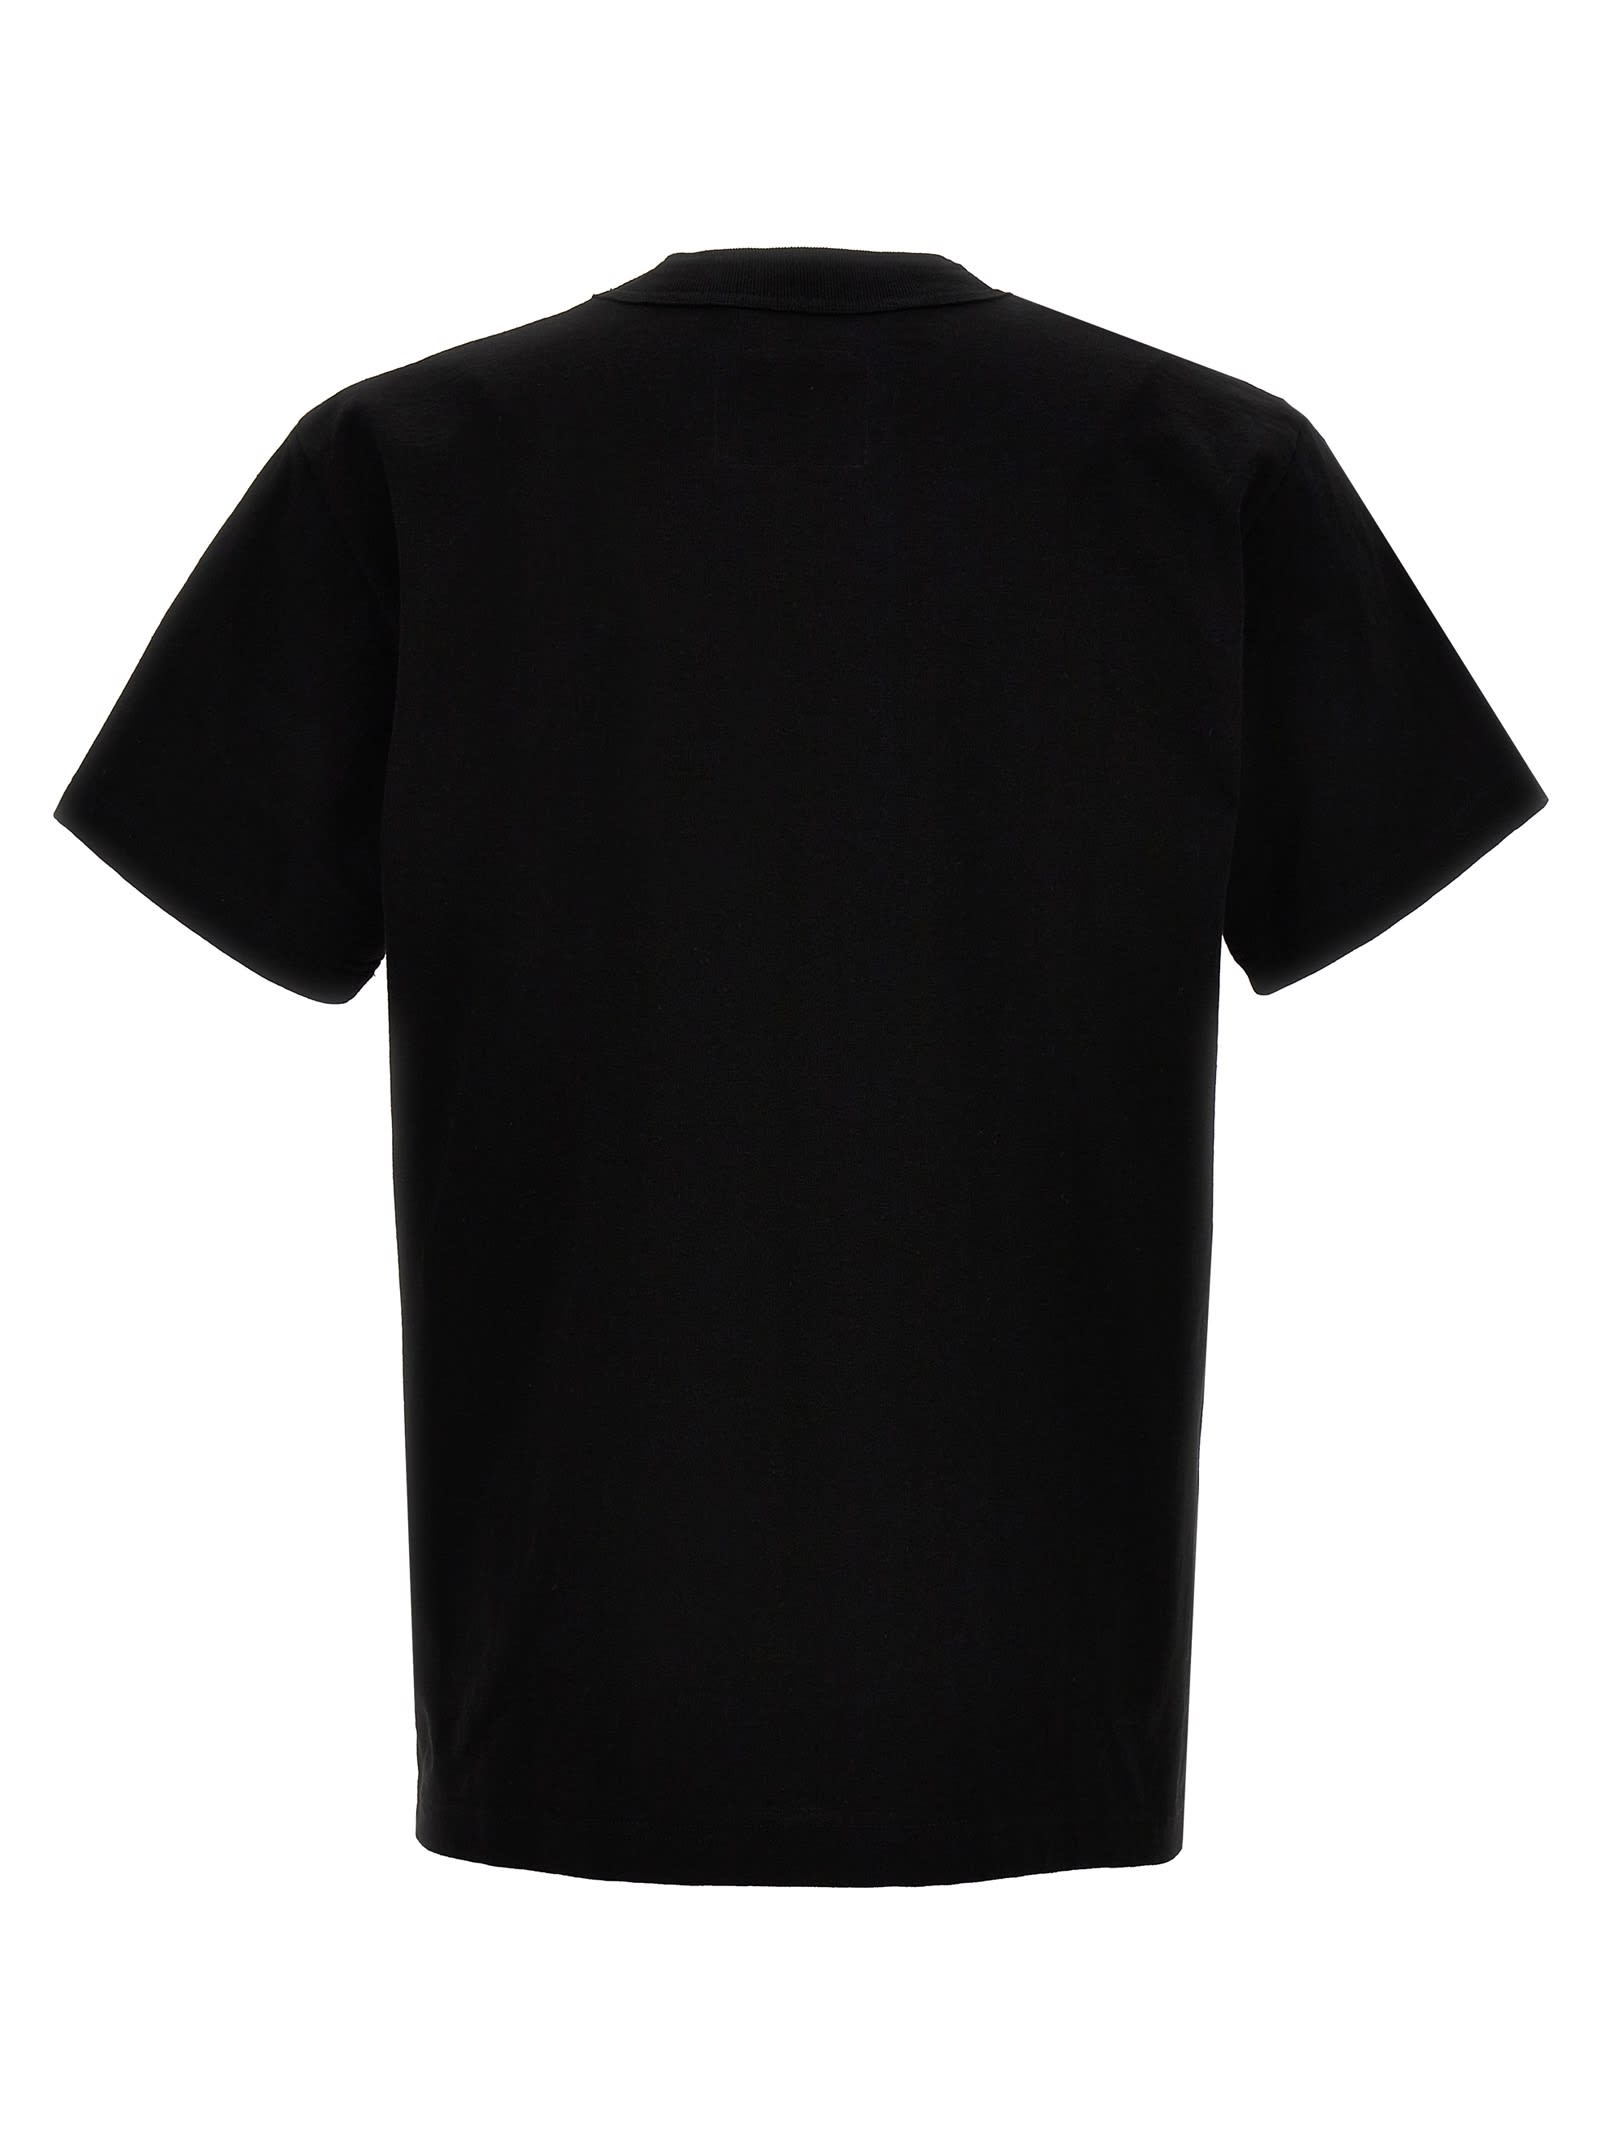 Shop Sacai T-shirt  X Carhartt Wip In Black